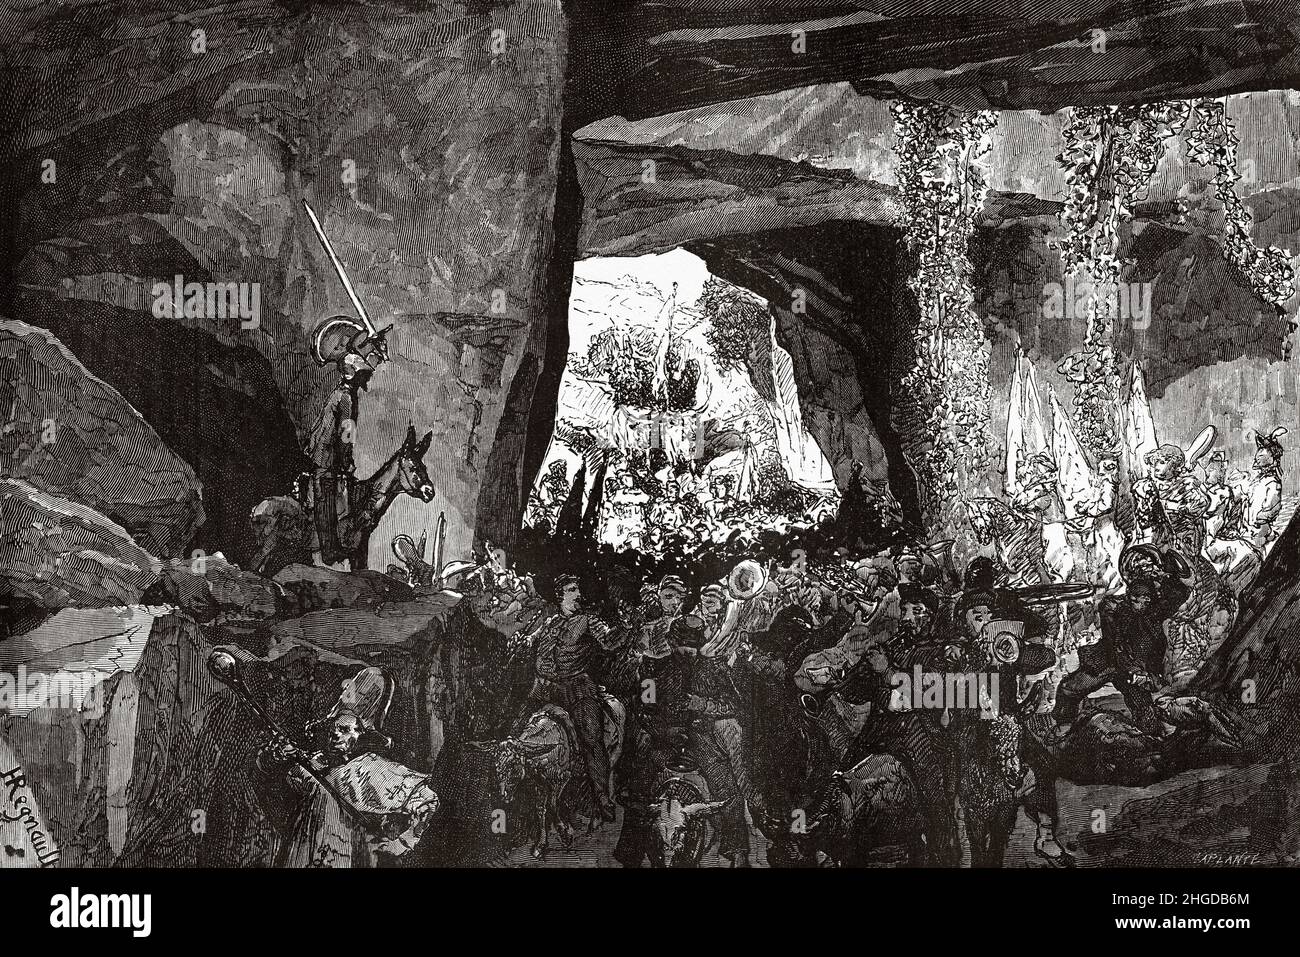 Karneval in Rom. Das deutsche Festival tritt in den Höhlen von La Cervara, Rom, ein. Italien, Europa. Alte, gravierte Illustration aus dem 19th. Jahrhundert von Francis Wey, Le Tour du Monde 1870 Stockfoto